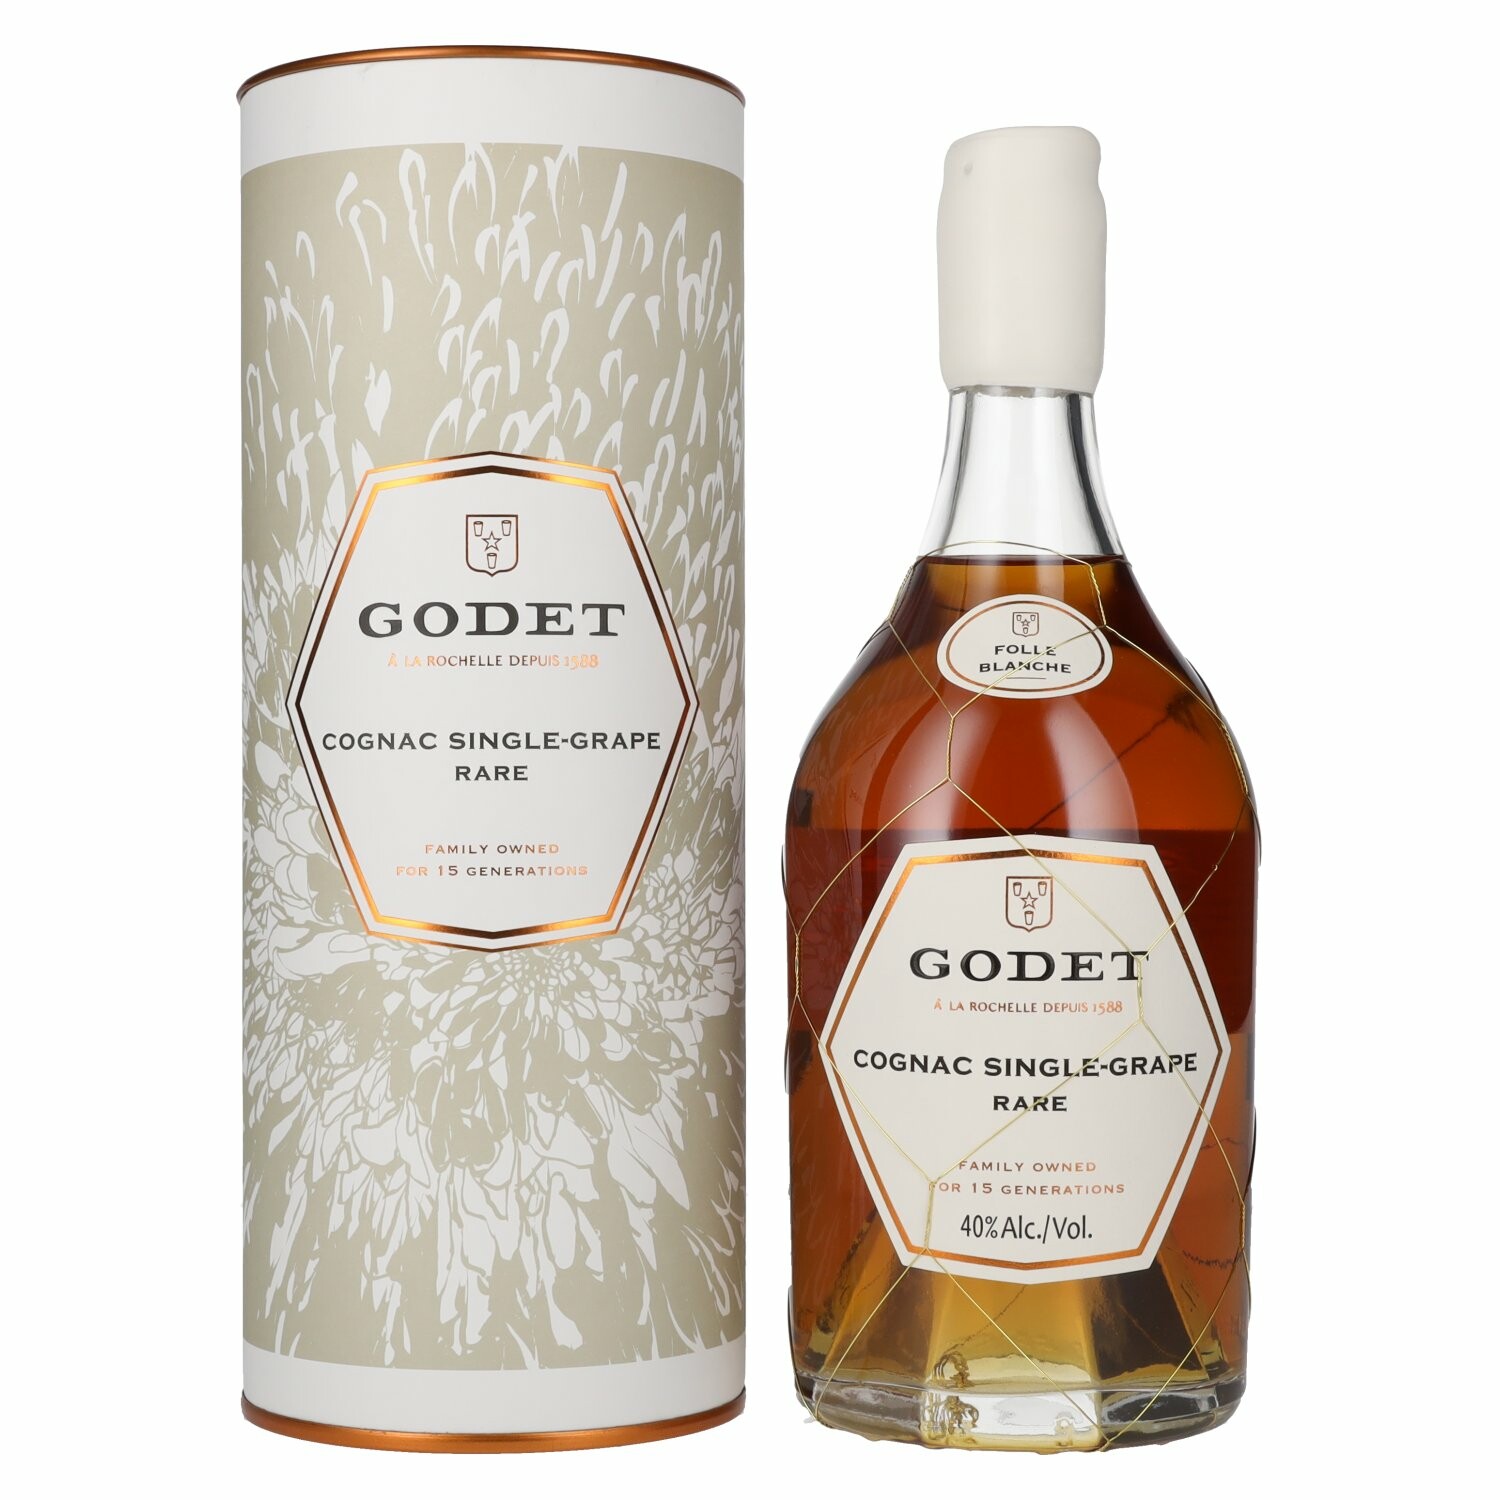 Godet Cognac SINGLE-GRAPE RARE Folle Blanche 40% Vol. 0,7l in Giftbox